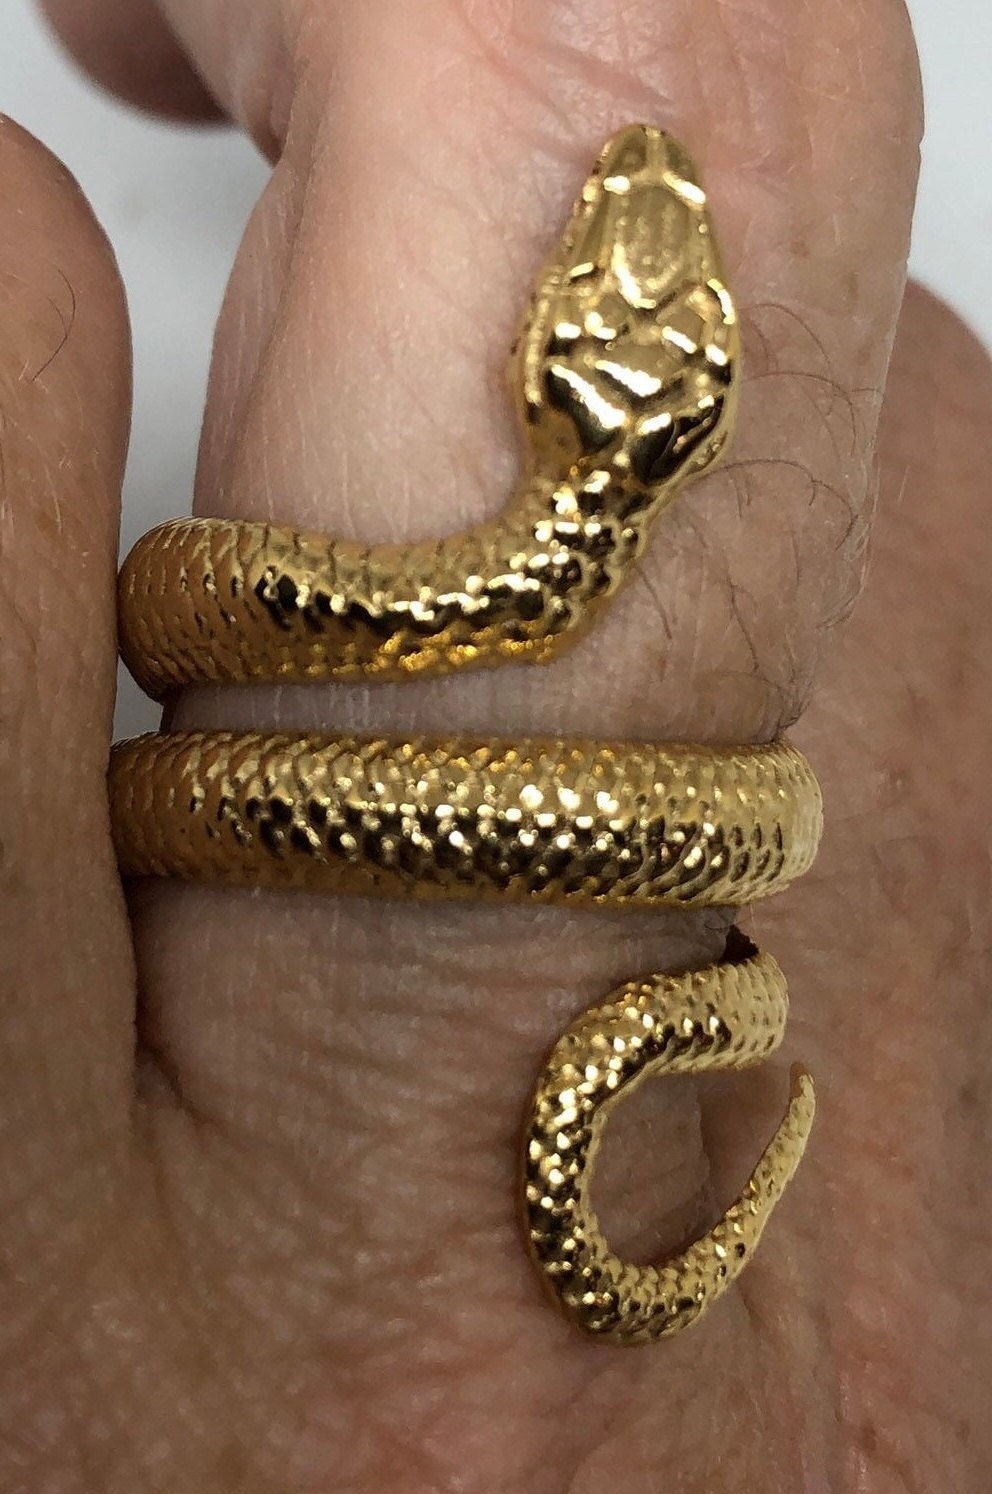 18k Gold Finish Stainless Steel Snake Ring on finger